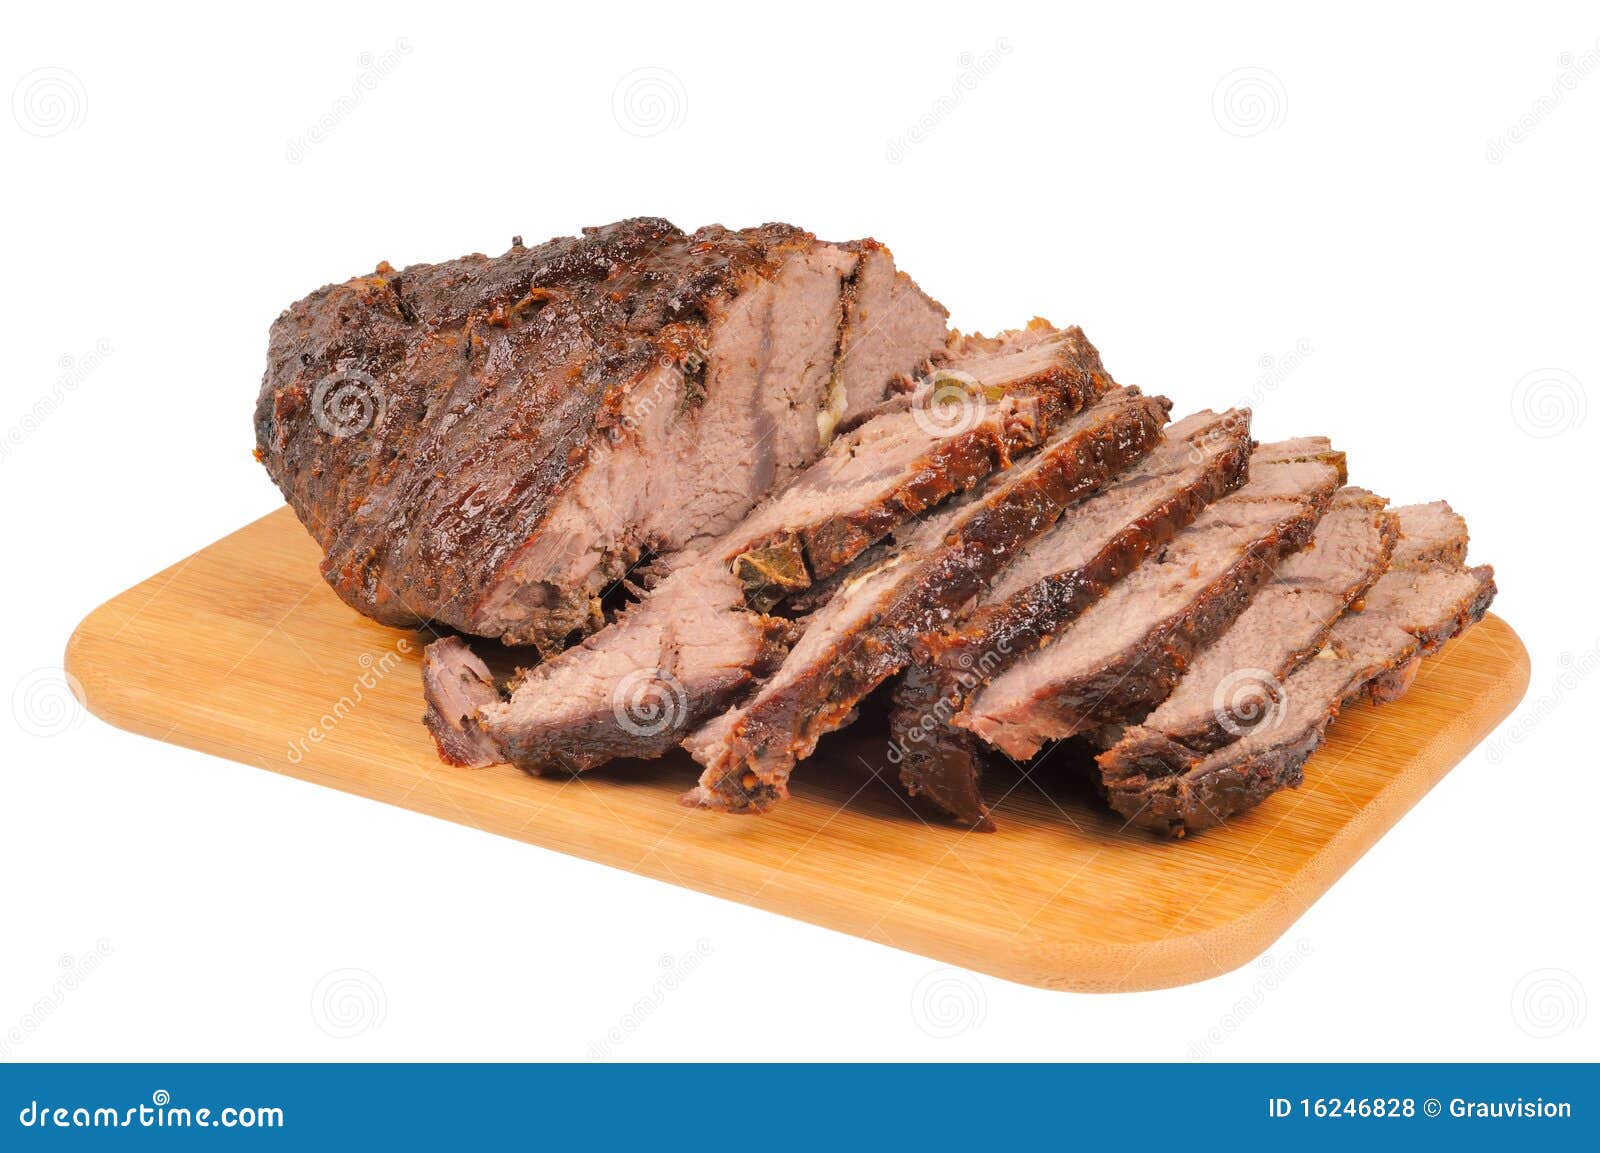 roast beef on a wooden board